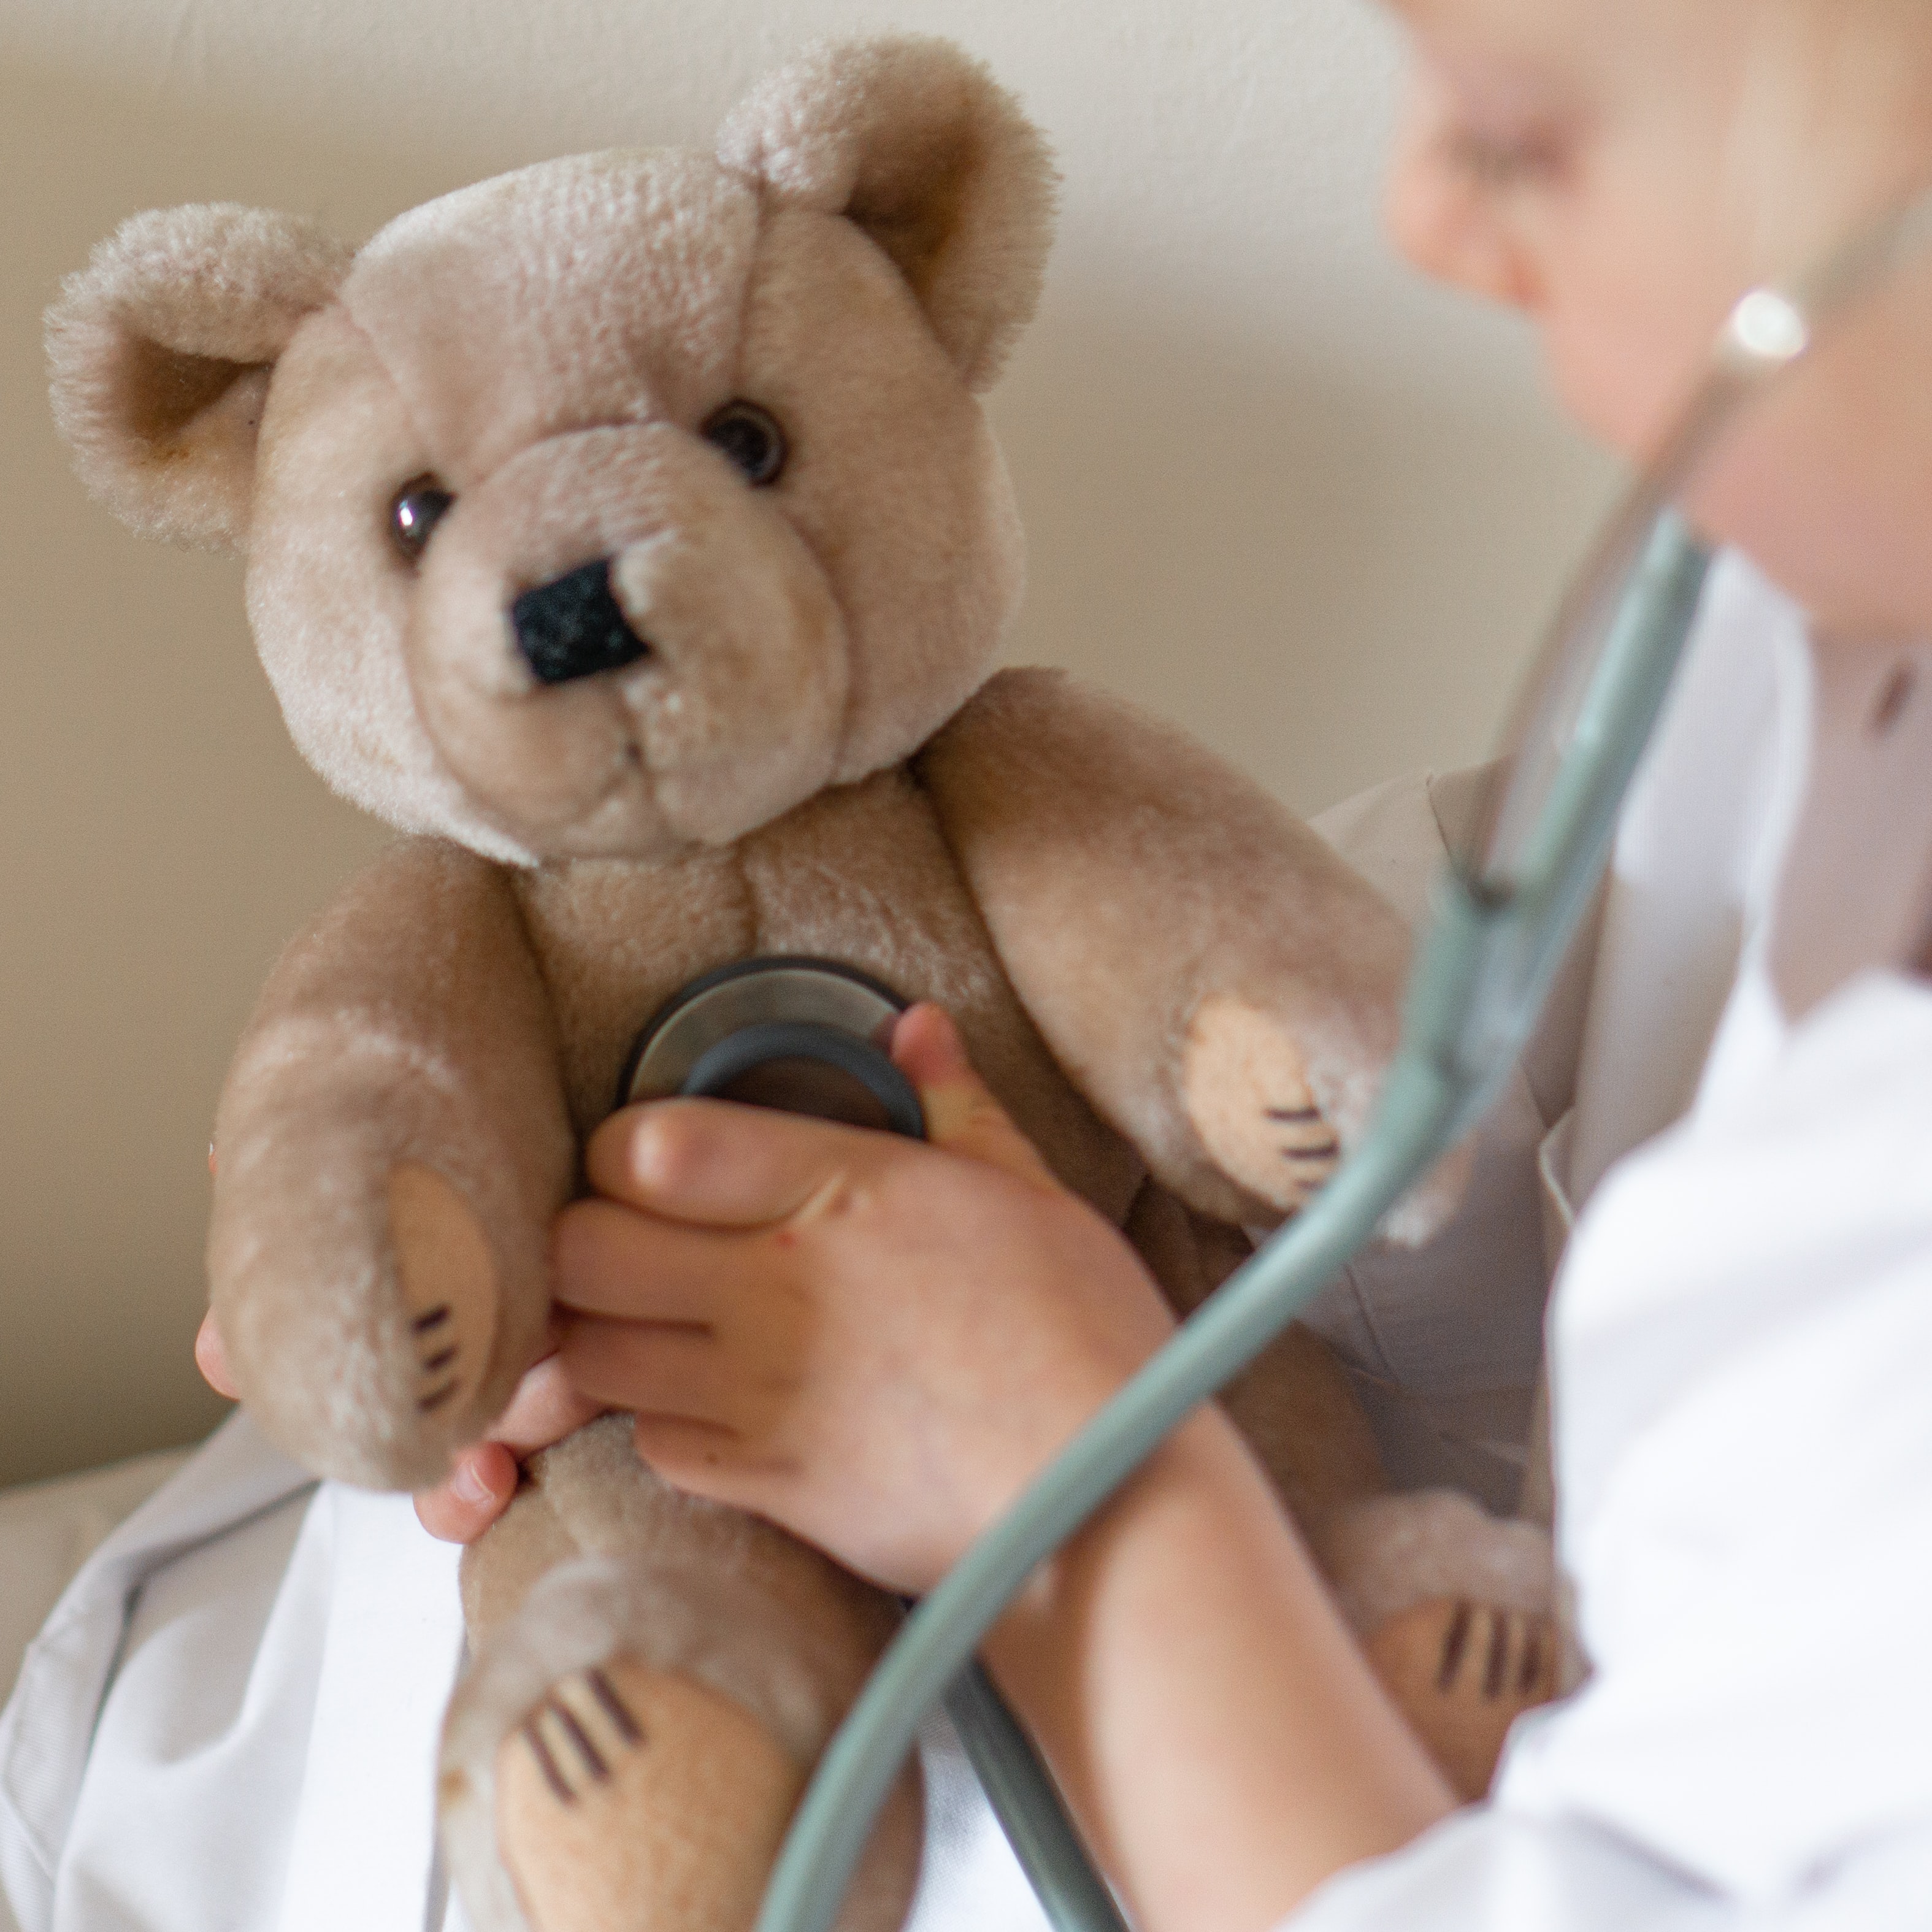 Doctor Teddy Bear